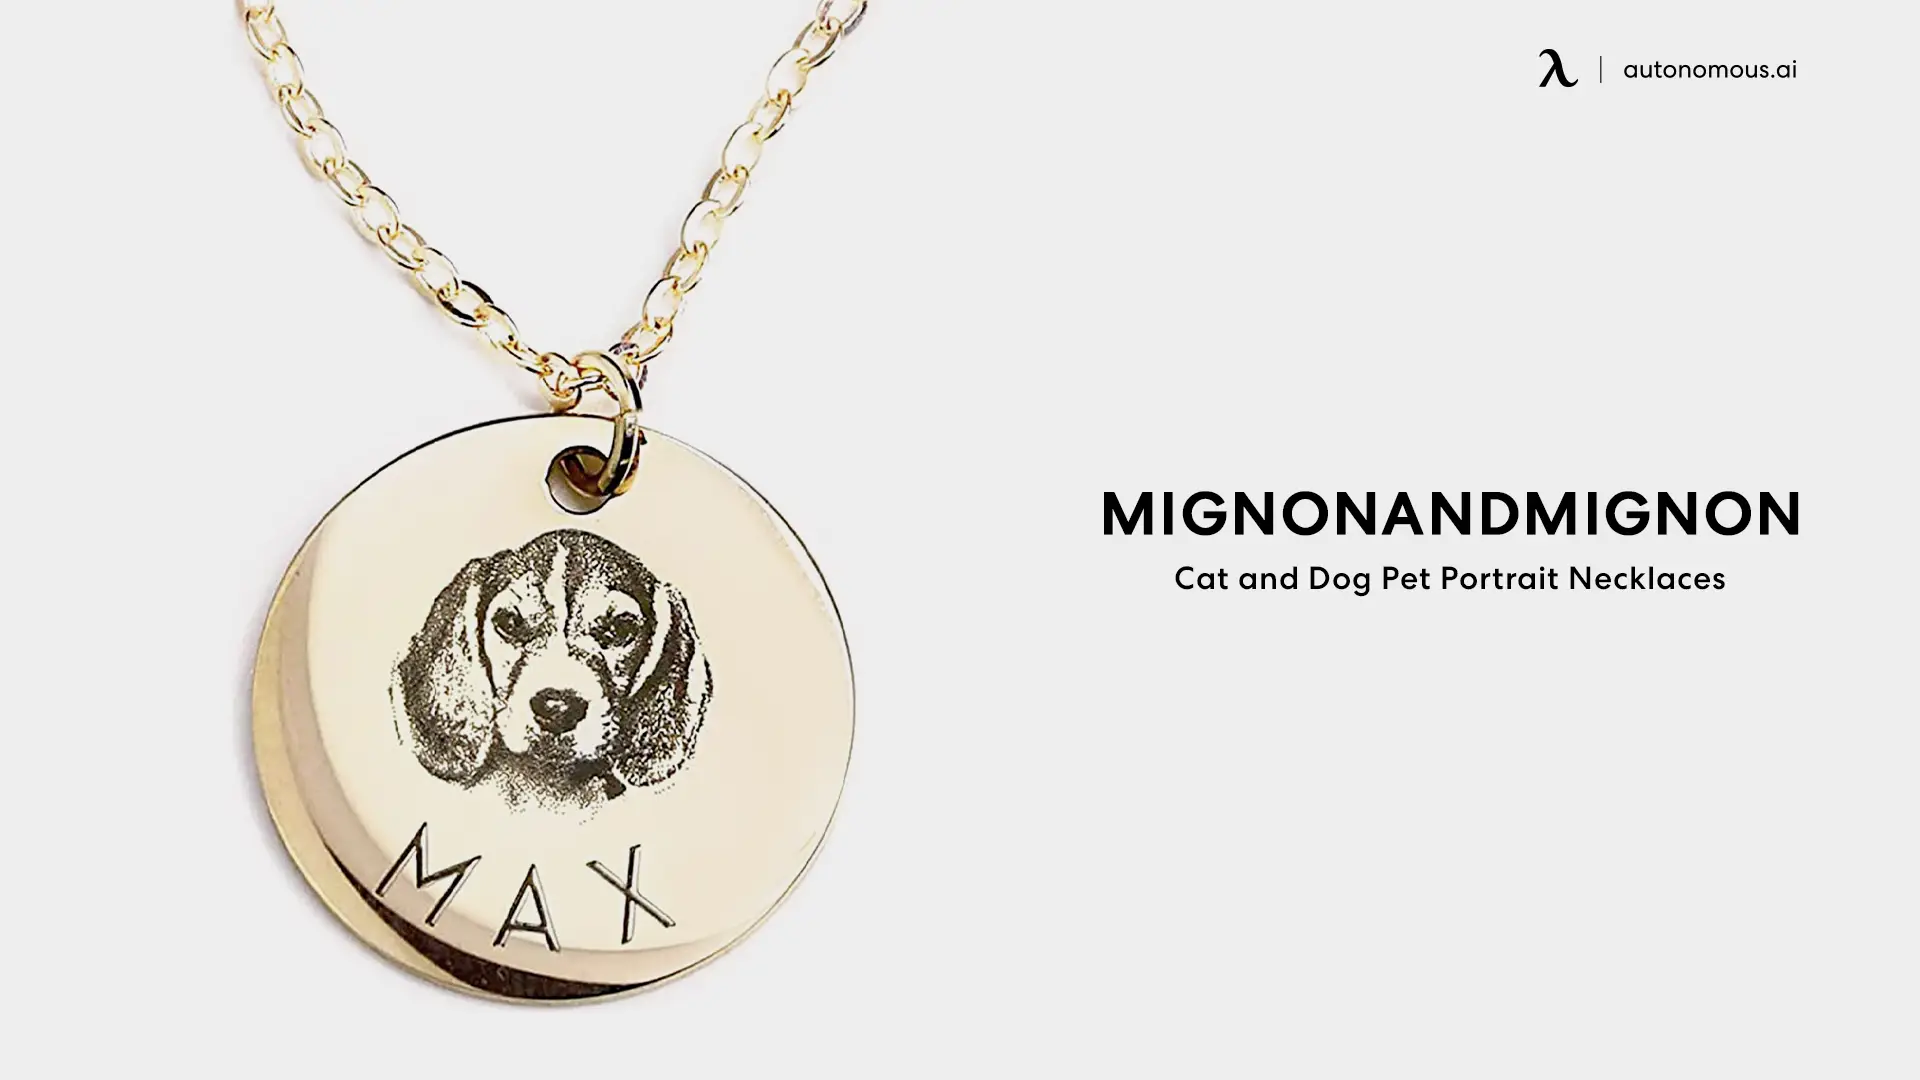 MIGNONANDMIGNON Cat and Dog Pet Portrait Necklaces